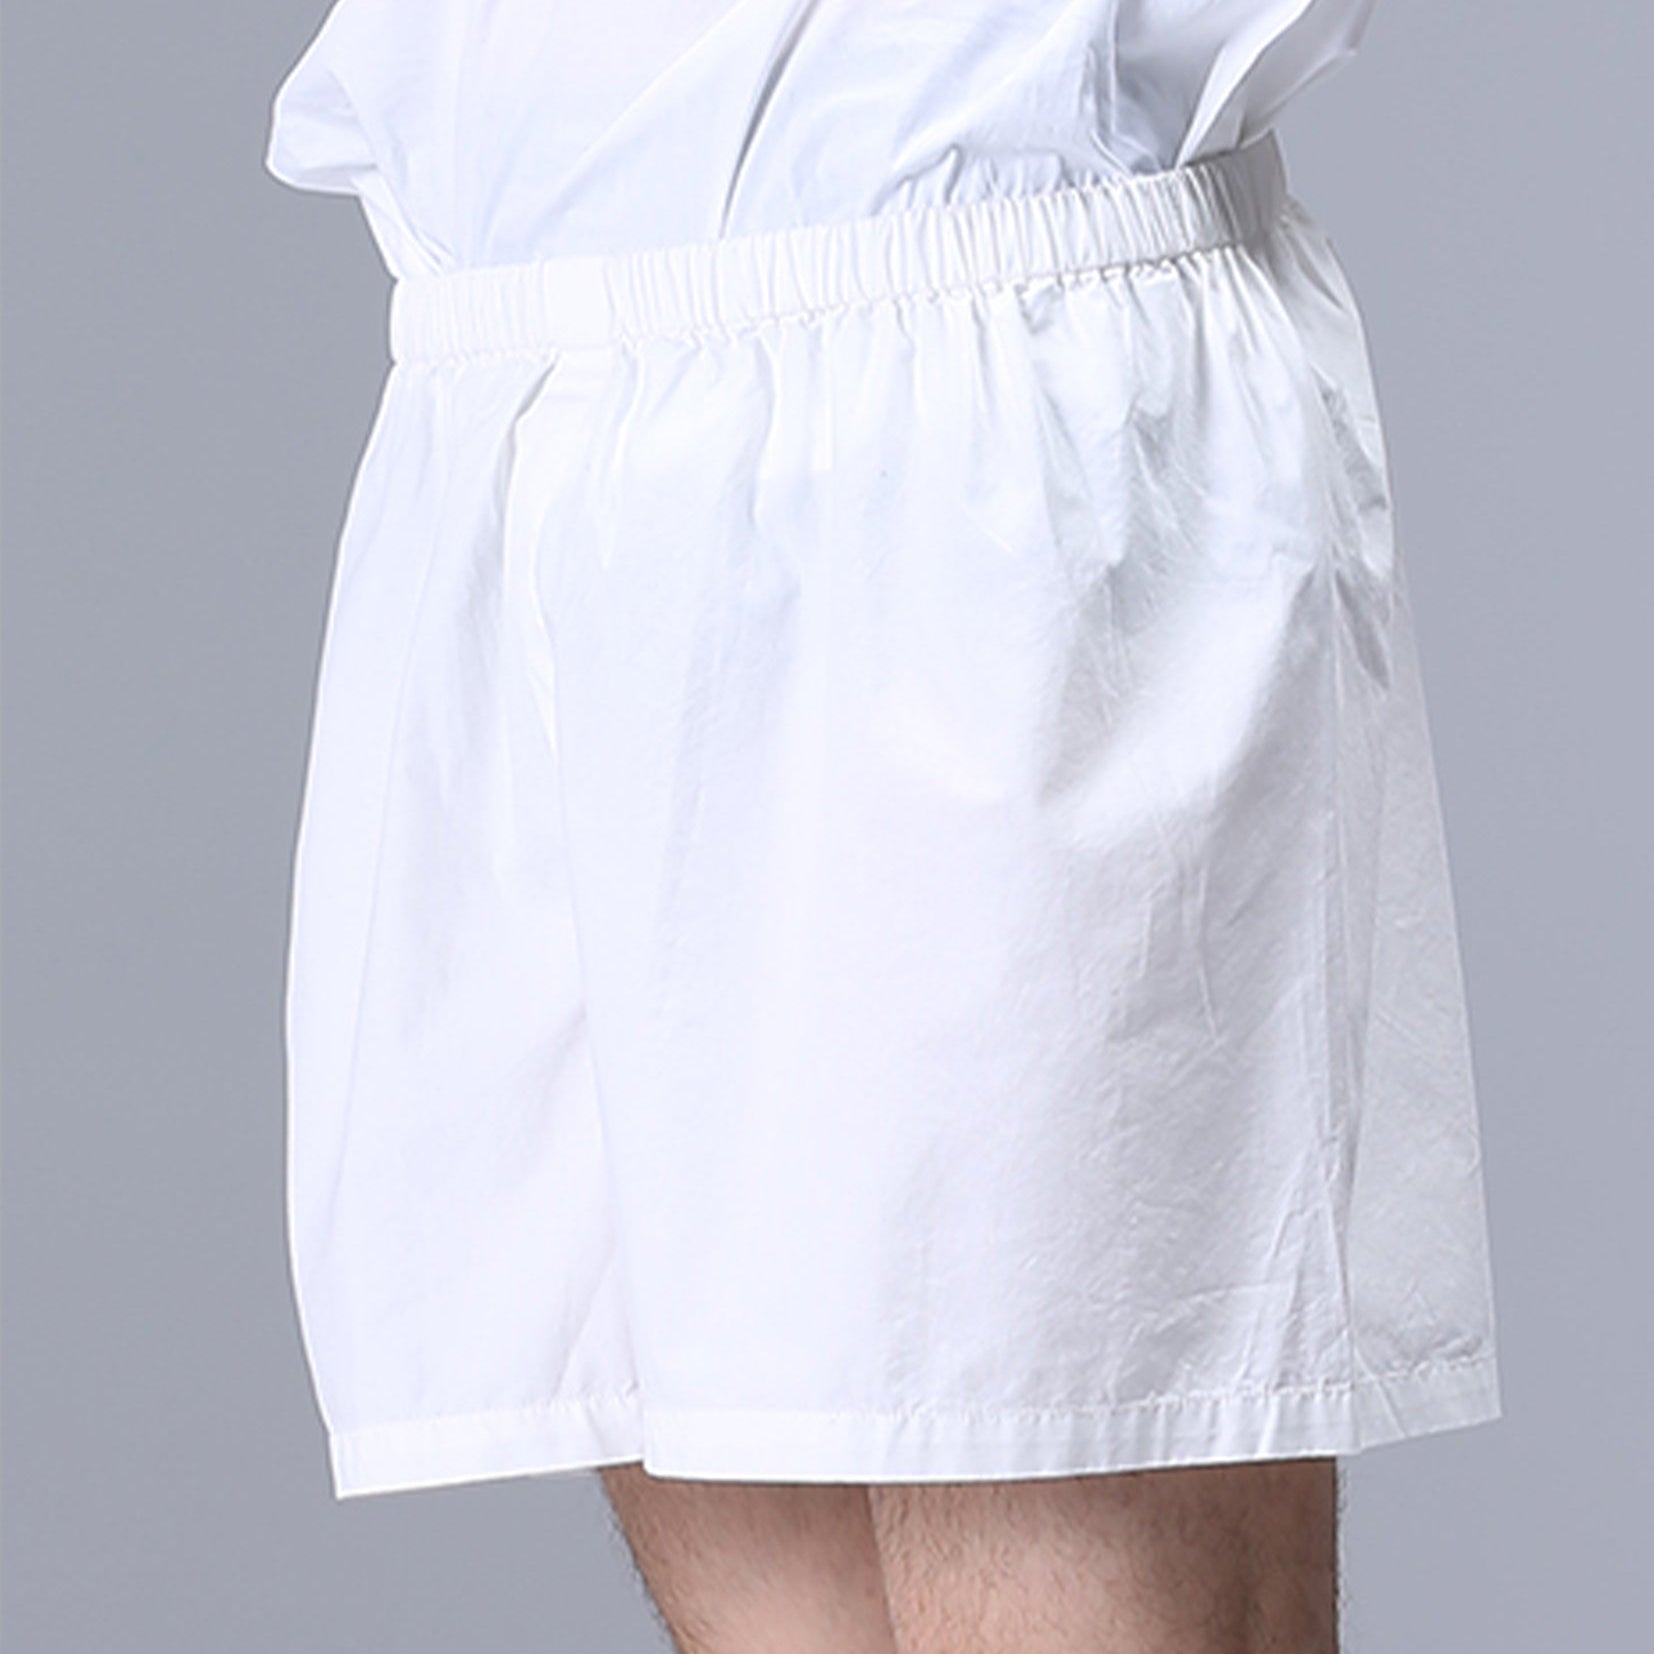 Unisex boxer shorts underwear in white